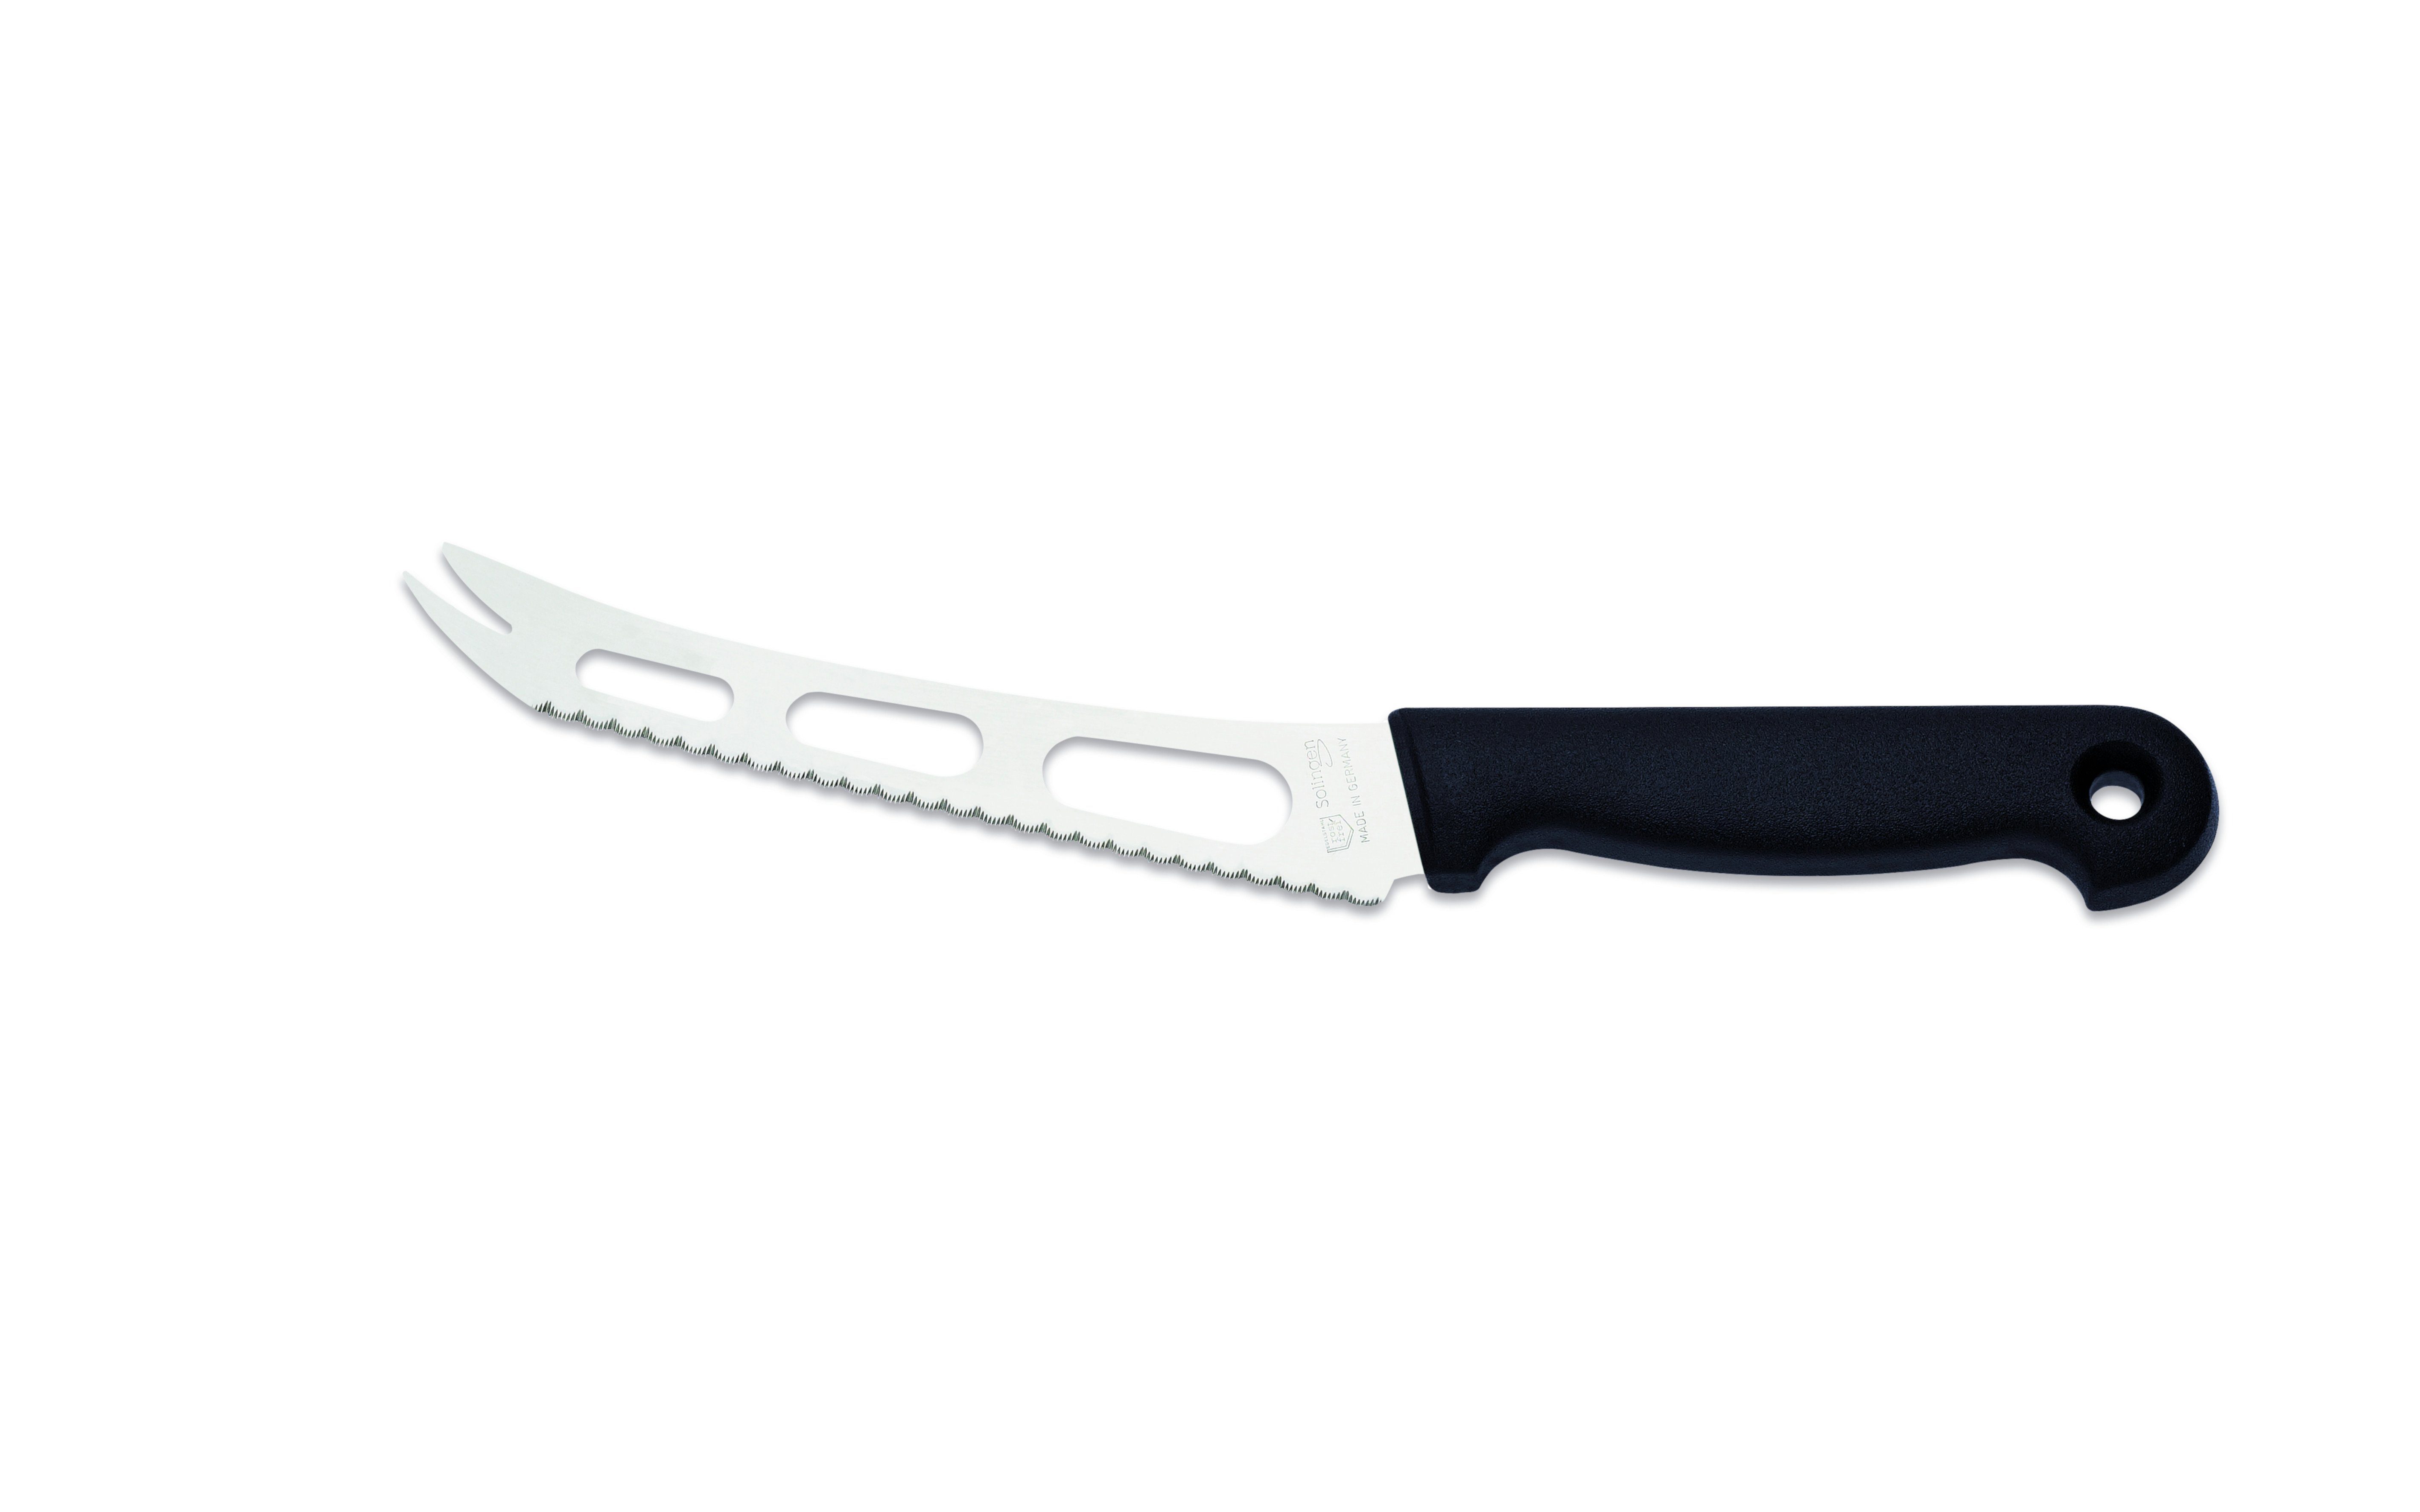 Giesser Messer Käsemesser Weichkäsemesser 9655 sp 15, reibungsarme Aussparungen an der Klinge für alle Käsearten schwarz